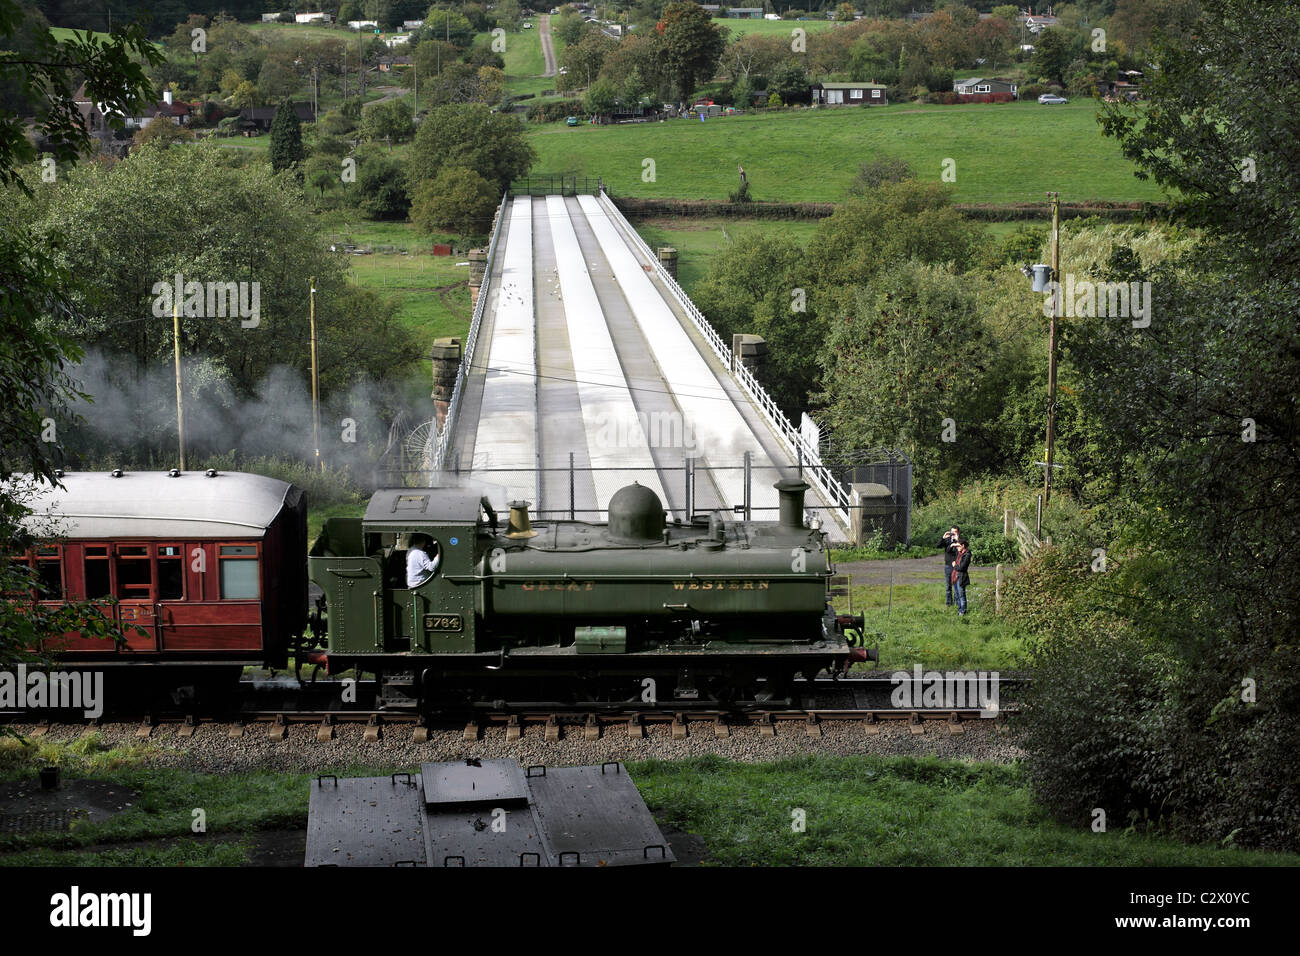 Ein Severn Valley Railway Zug vorbei eine Brücke über den Fluss Severn, in der Nähe von Bewdley. (Siehe Beschreibung für vollständige Beschriftung) Stockfoto